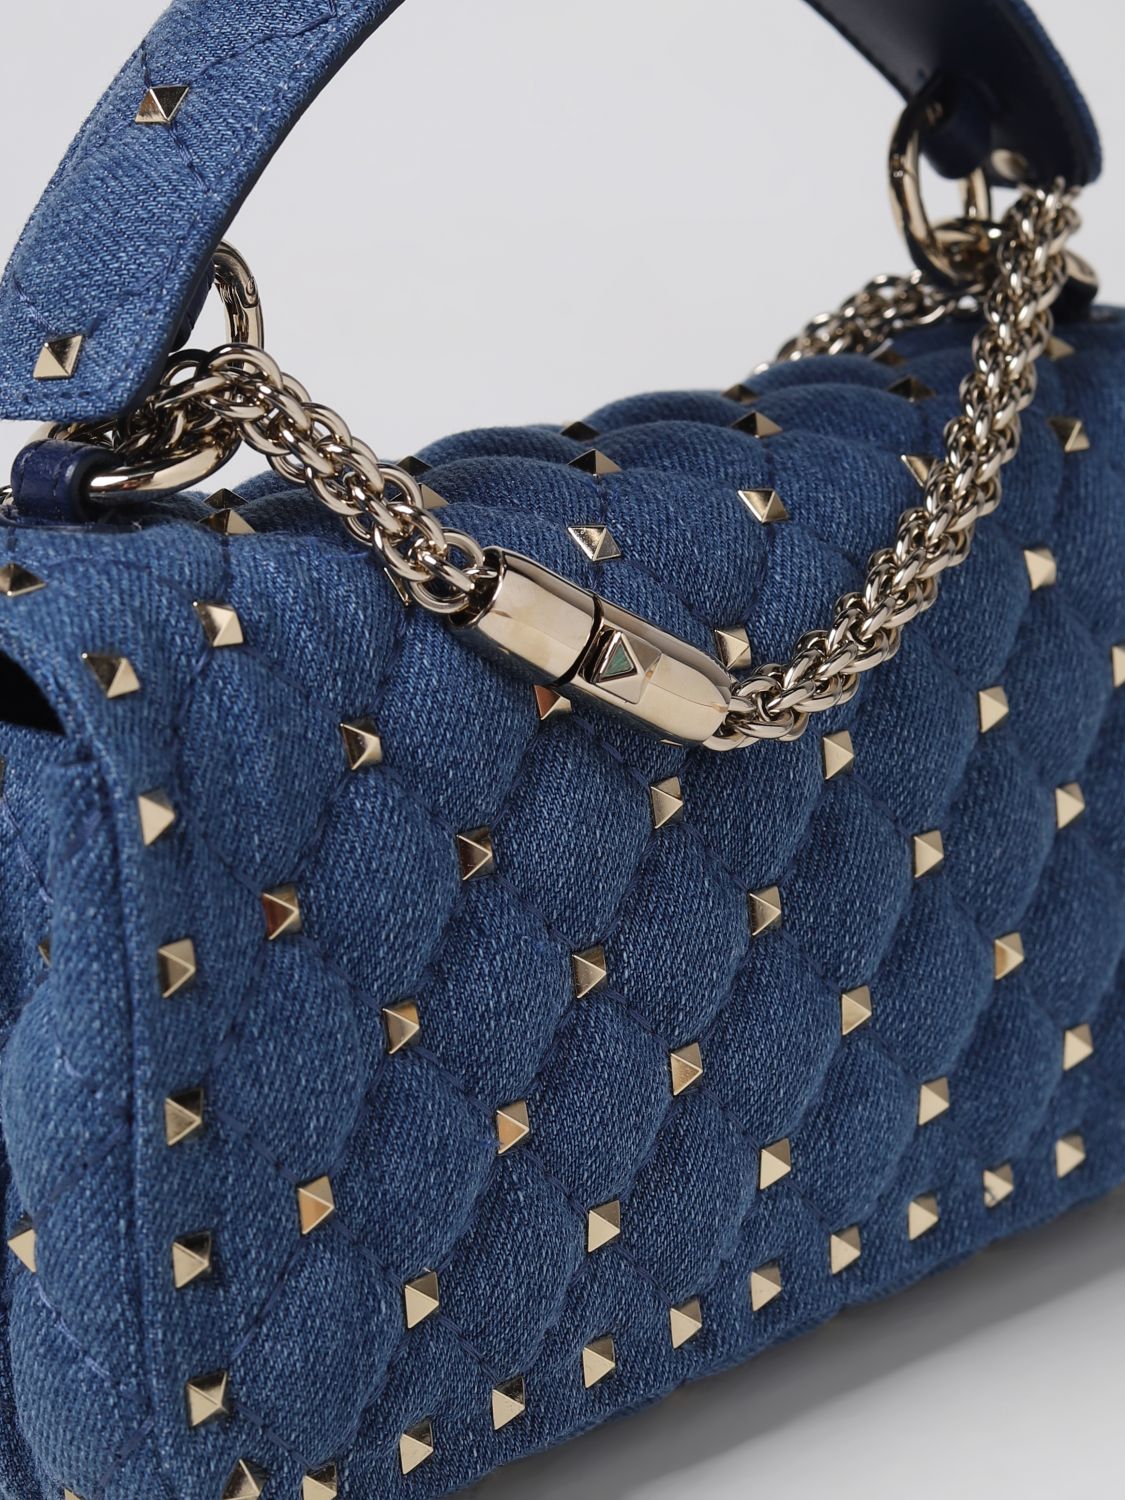 VALENTINO GARAVANI: Rockstud Spike bag in quilted denim - Blue